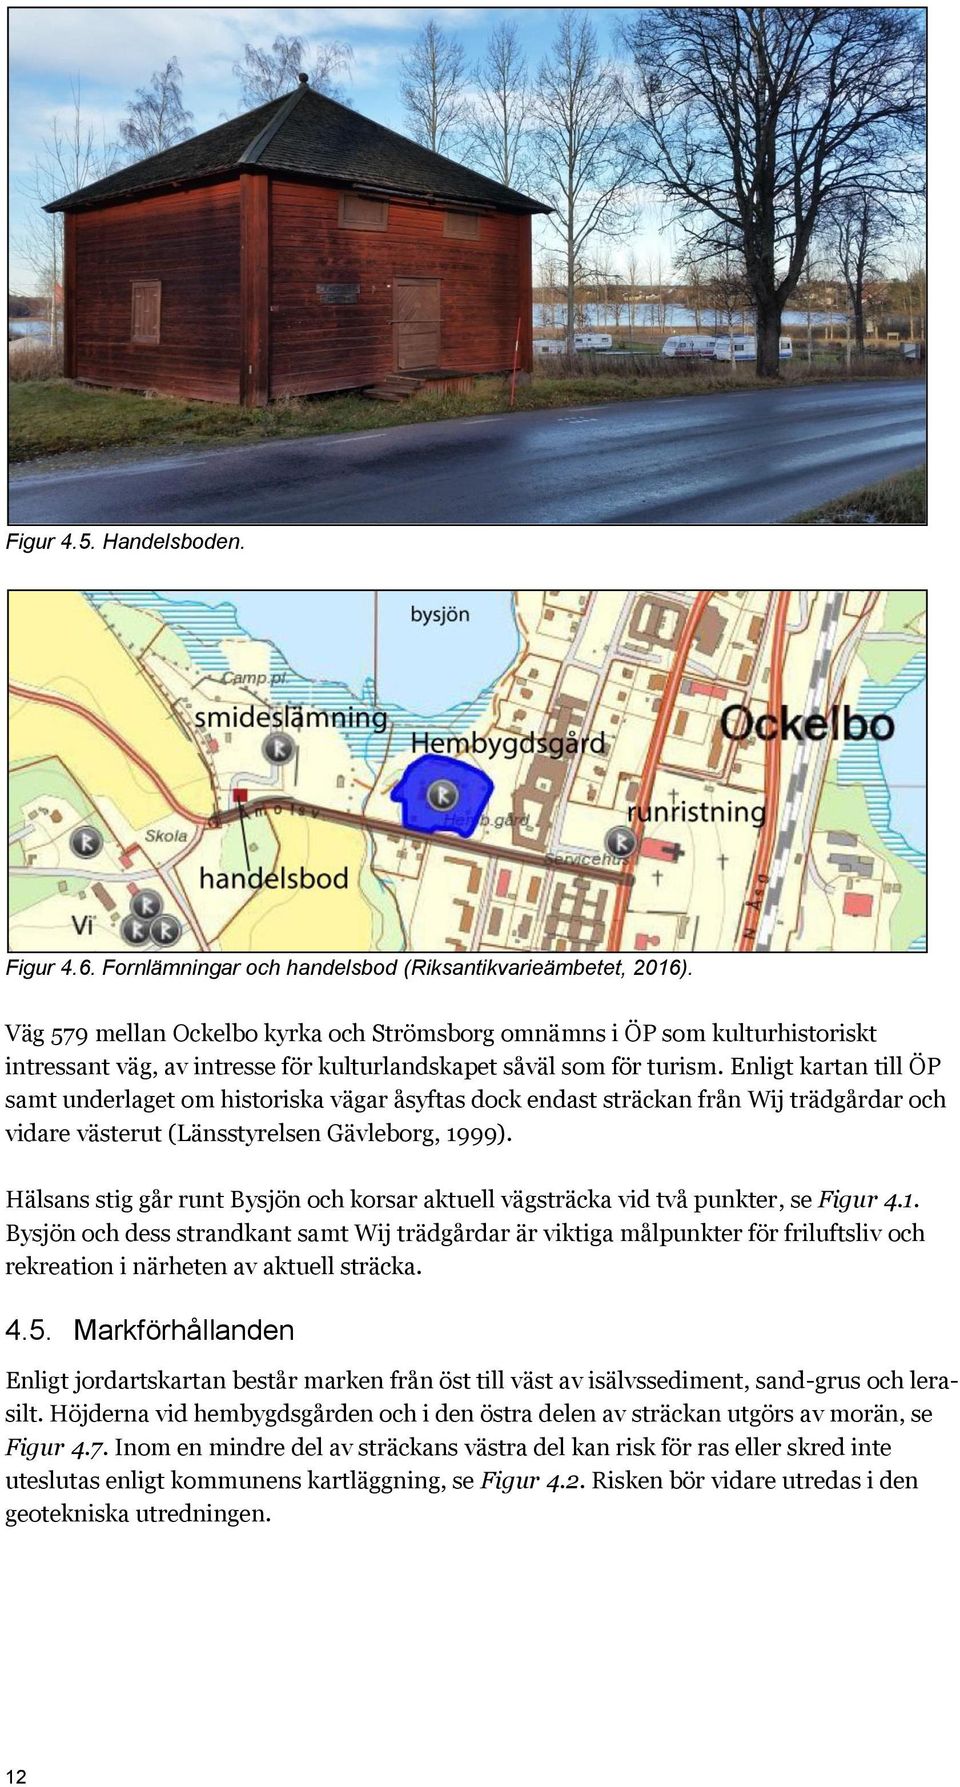 Enligt kartan till ÖP samt underlaget om historiska vägar åsyftas dock endast sträckan från Wij trädgårdar och vidare västerut (Länsstyrelsen Gävleborg, 1999).